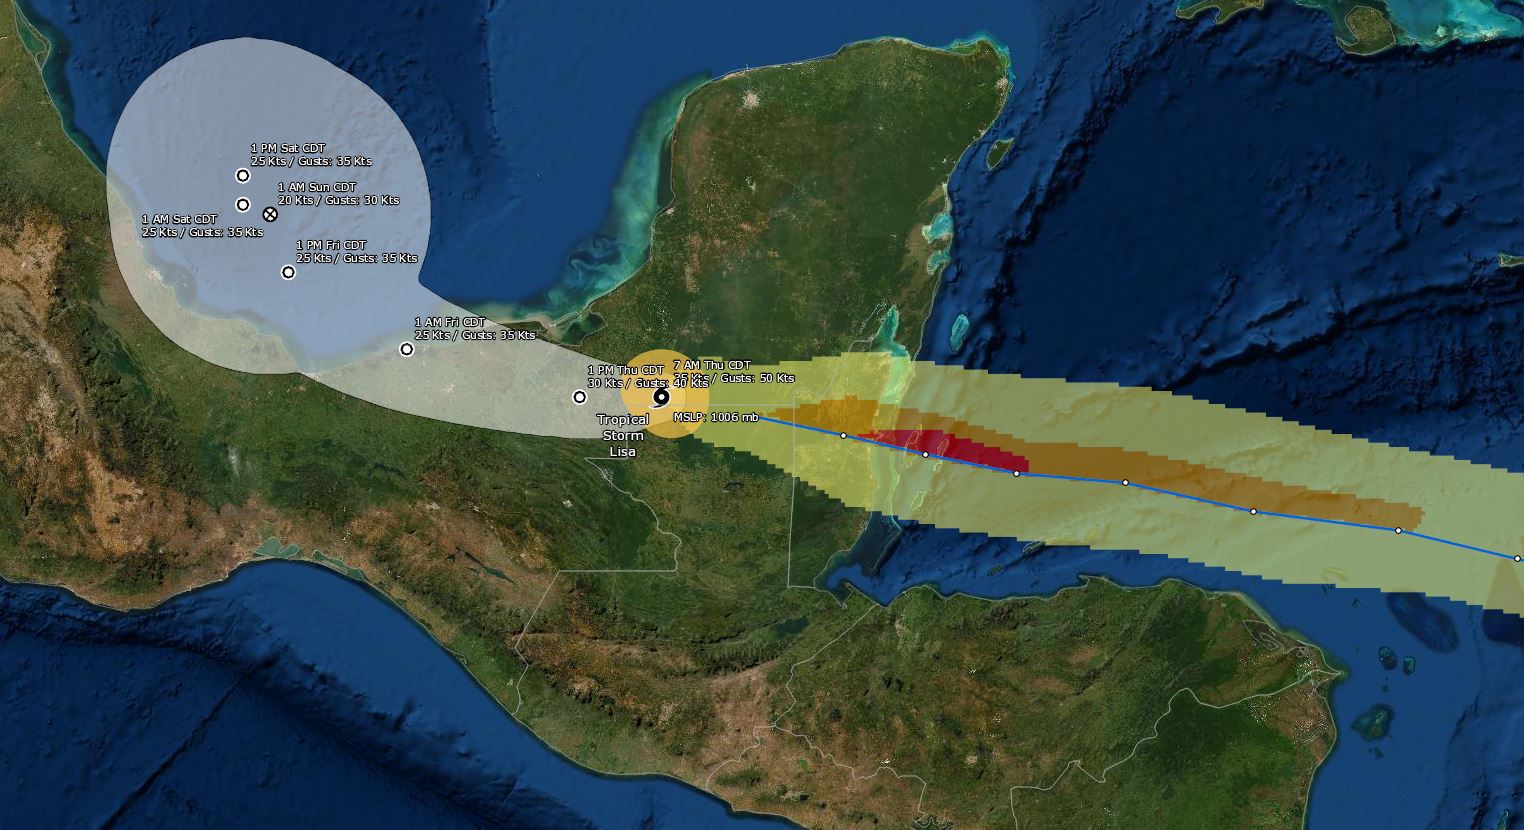 Tormenta Lisa sale de Guatemala y va rumbo a Campeche, México. (Foto Prensa Libre: NOAA)